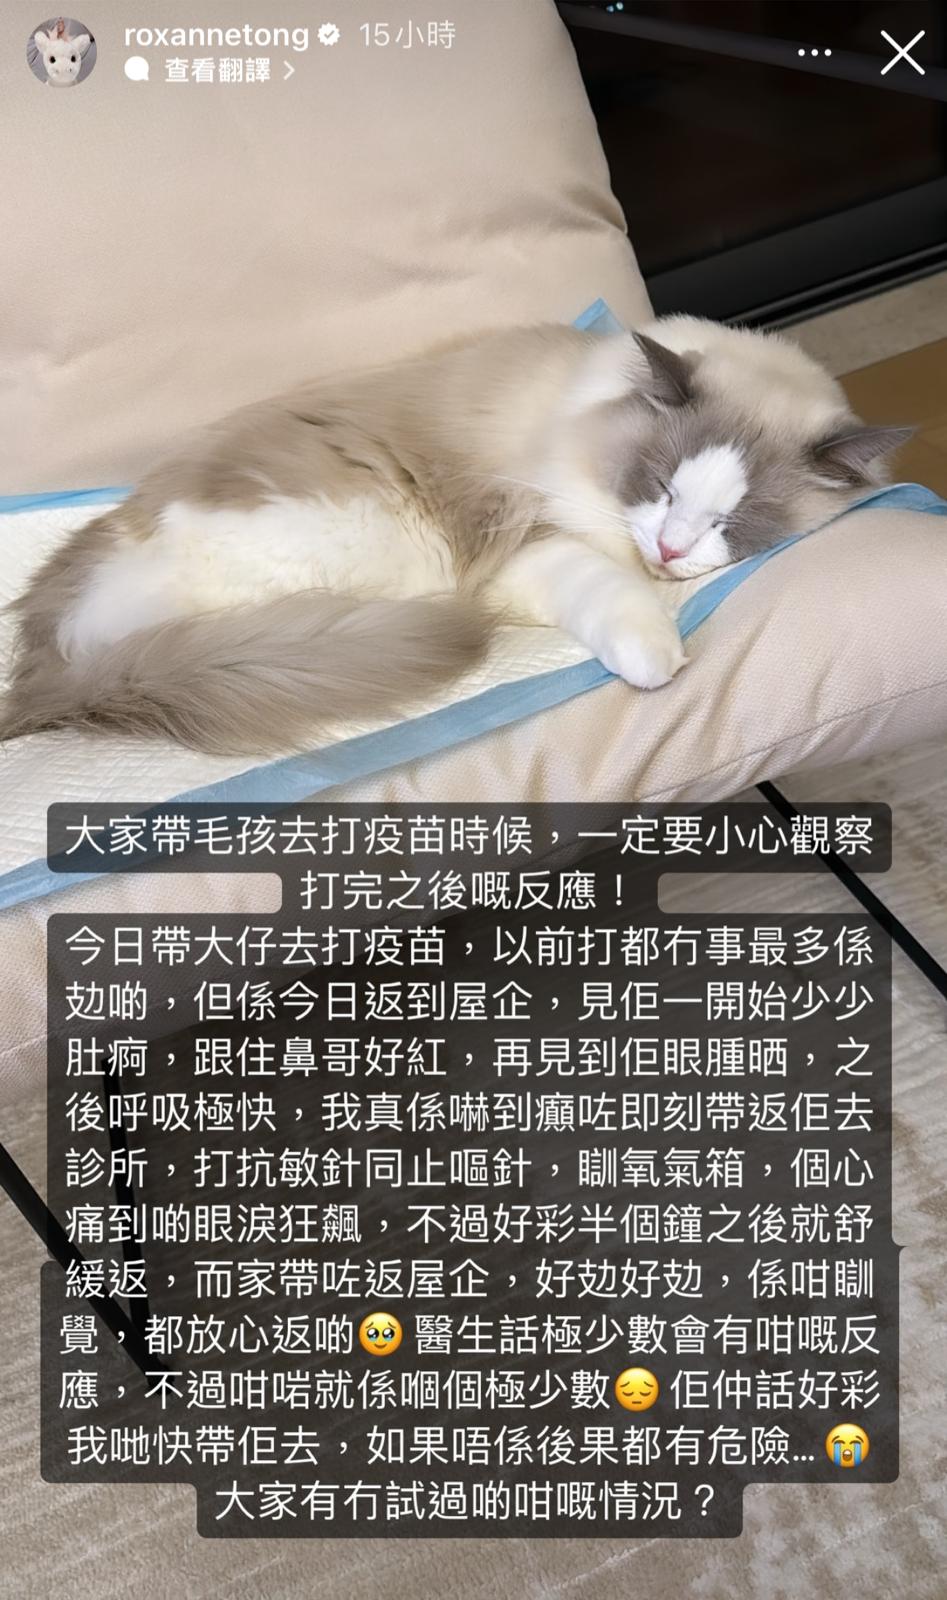 靚湯在IG限時動態貼出Tino睡在貓墊的照片。